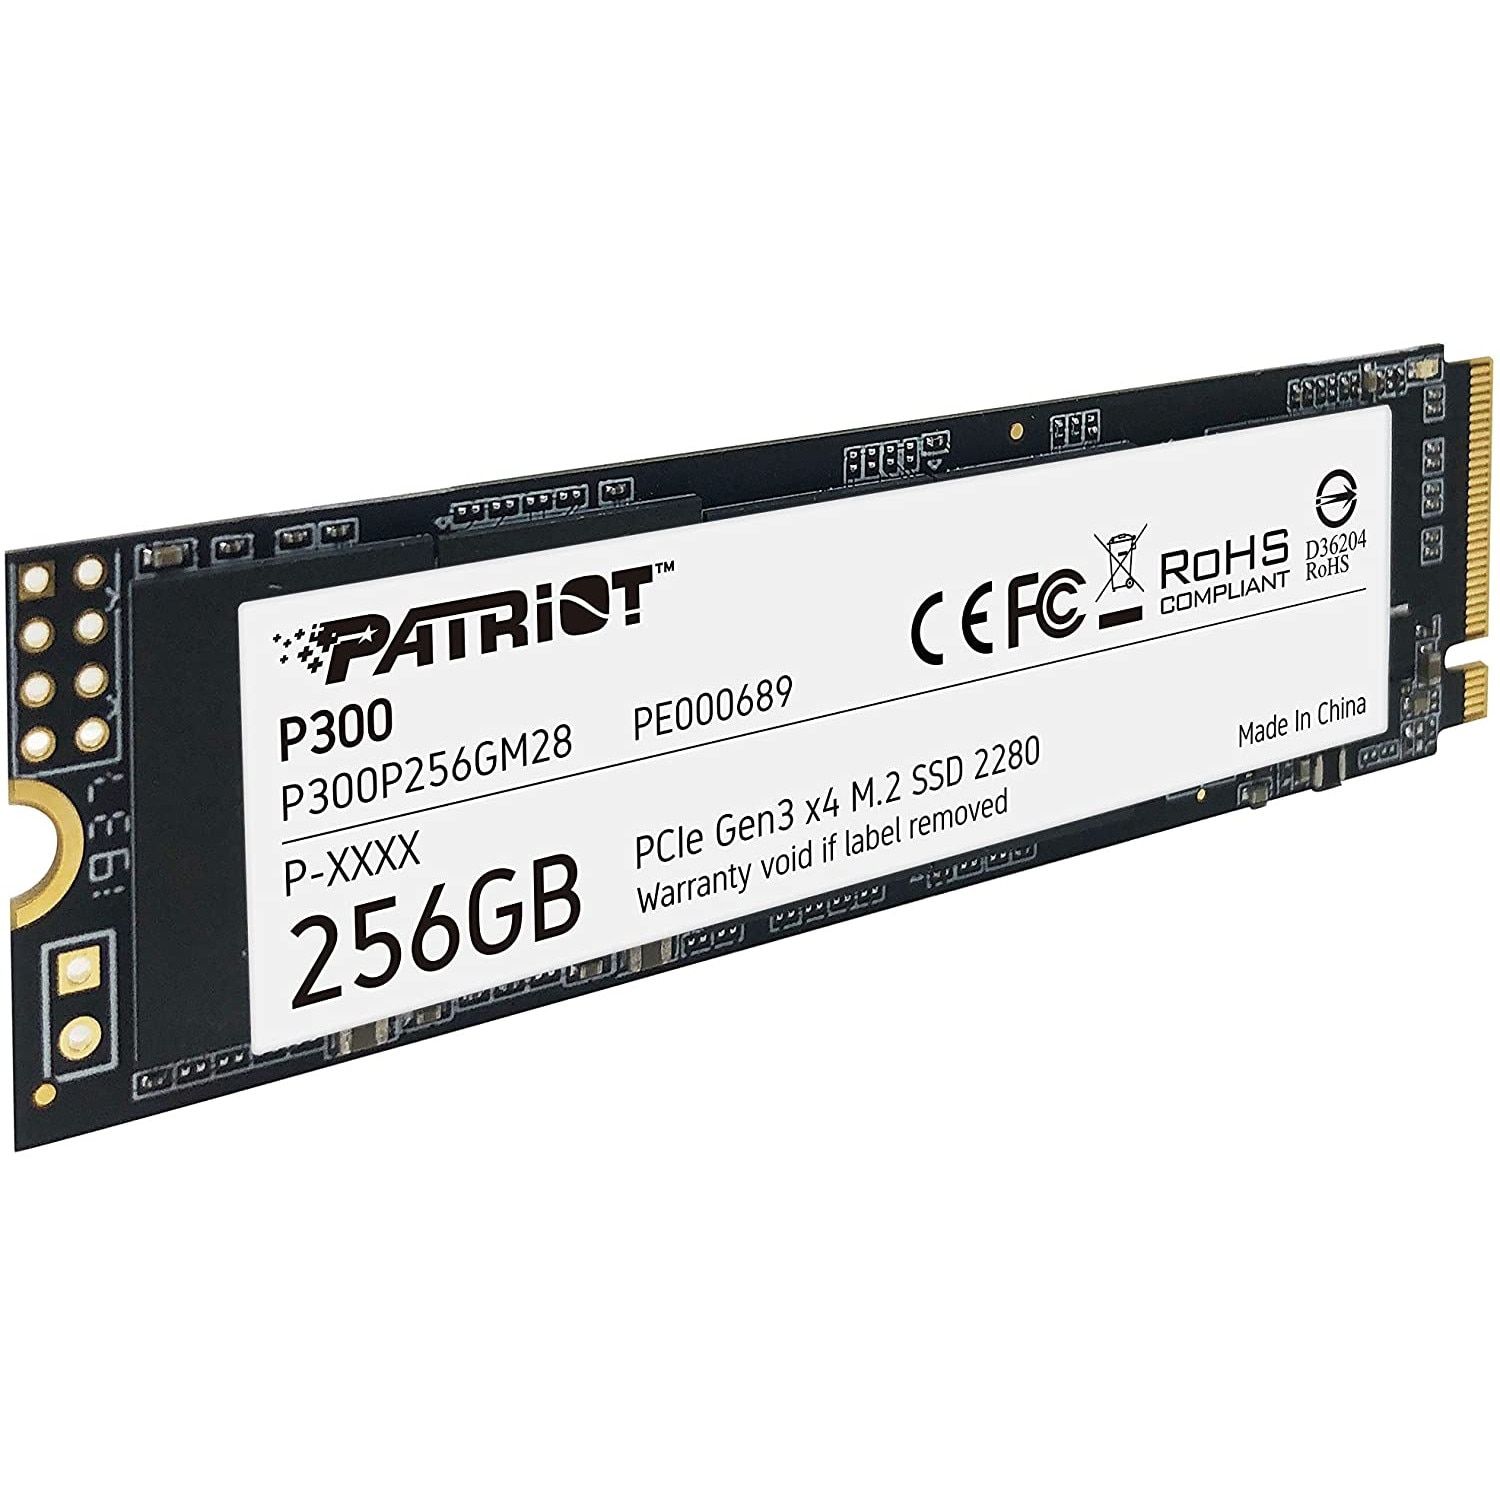 PATRIOT P300 256GB M2 2280 PCIe SSD_4